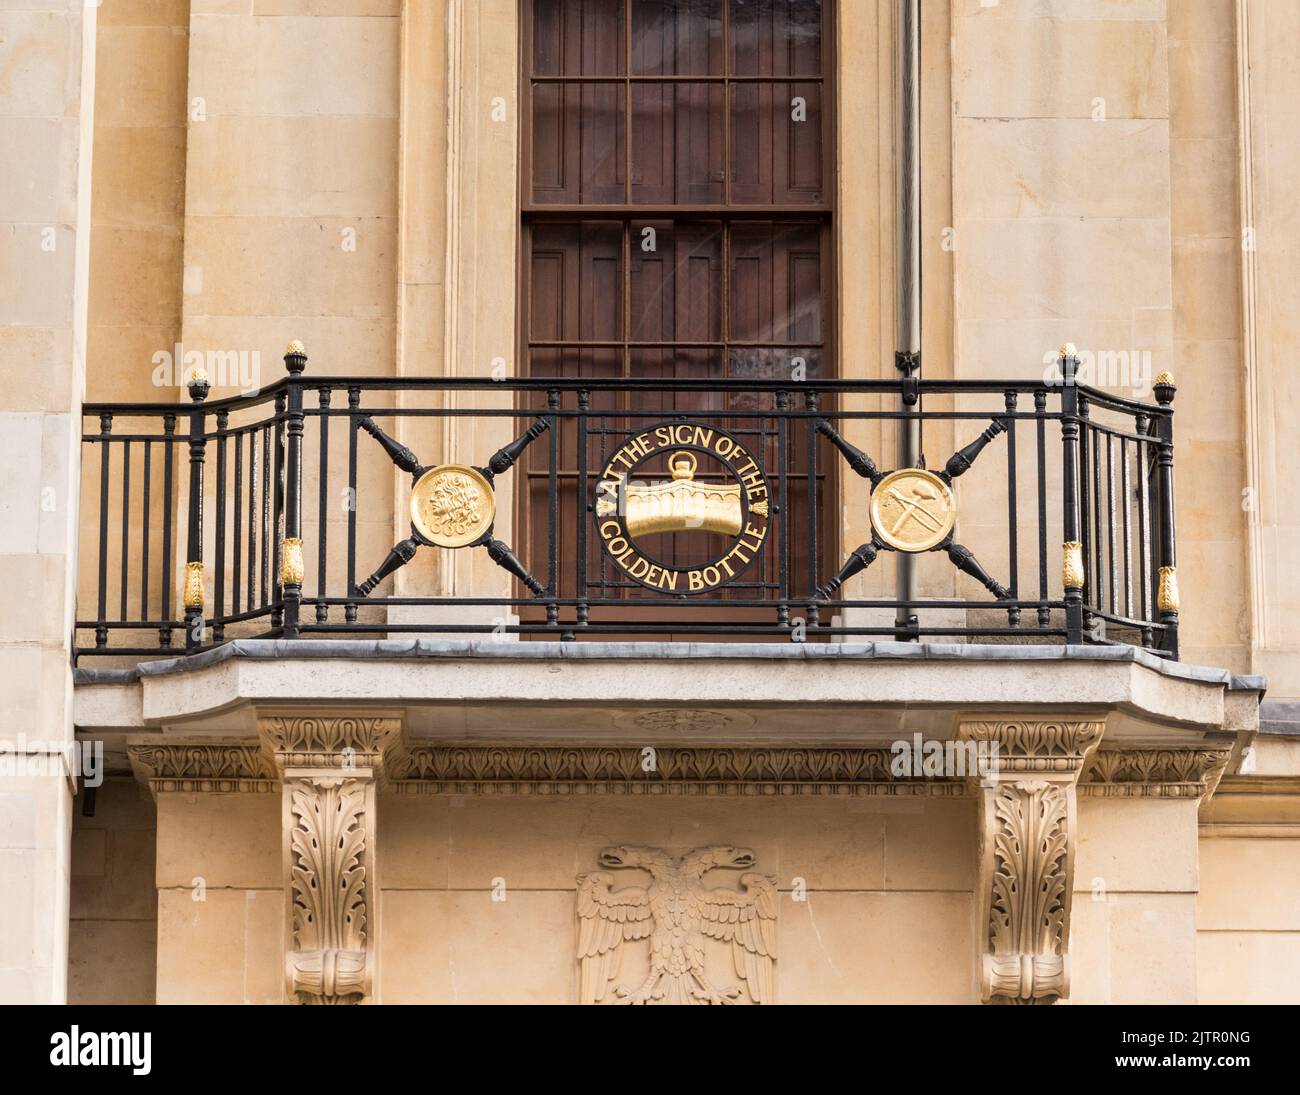 Le « logo de la bouteille d'or » à l'extérieur de C. Hoare & Co., la plus ancienne banque de dépôt privée de Grande-Bretagne, sur Fleet Street, Londres, Angleterre, Royaume-Uni Banque D'Images